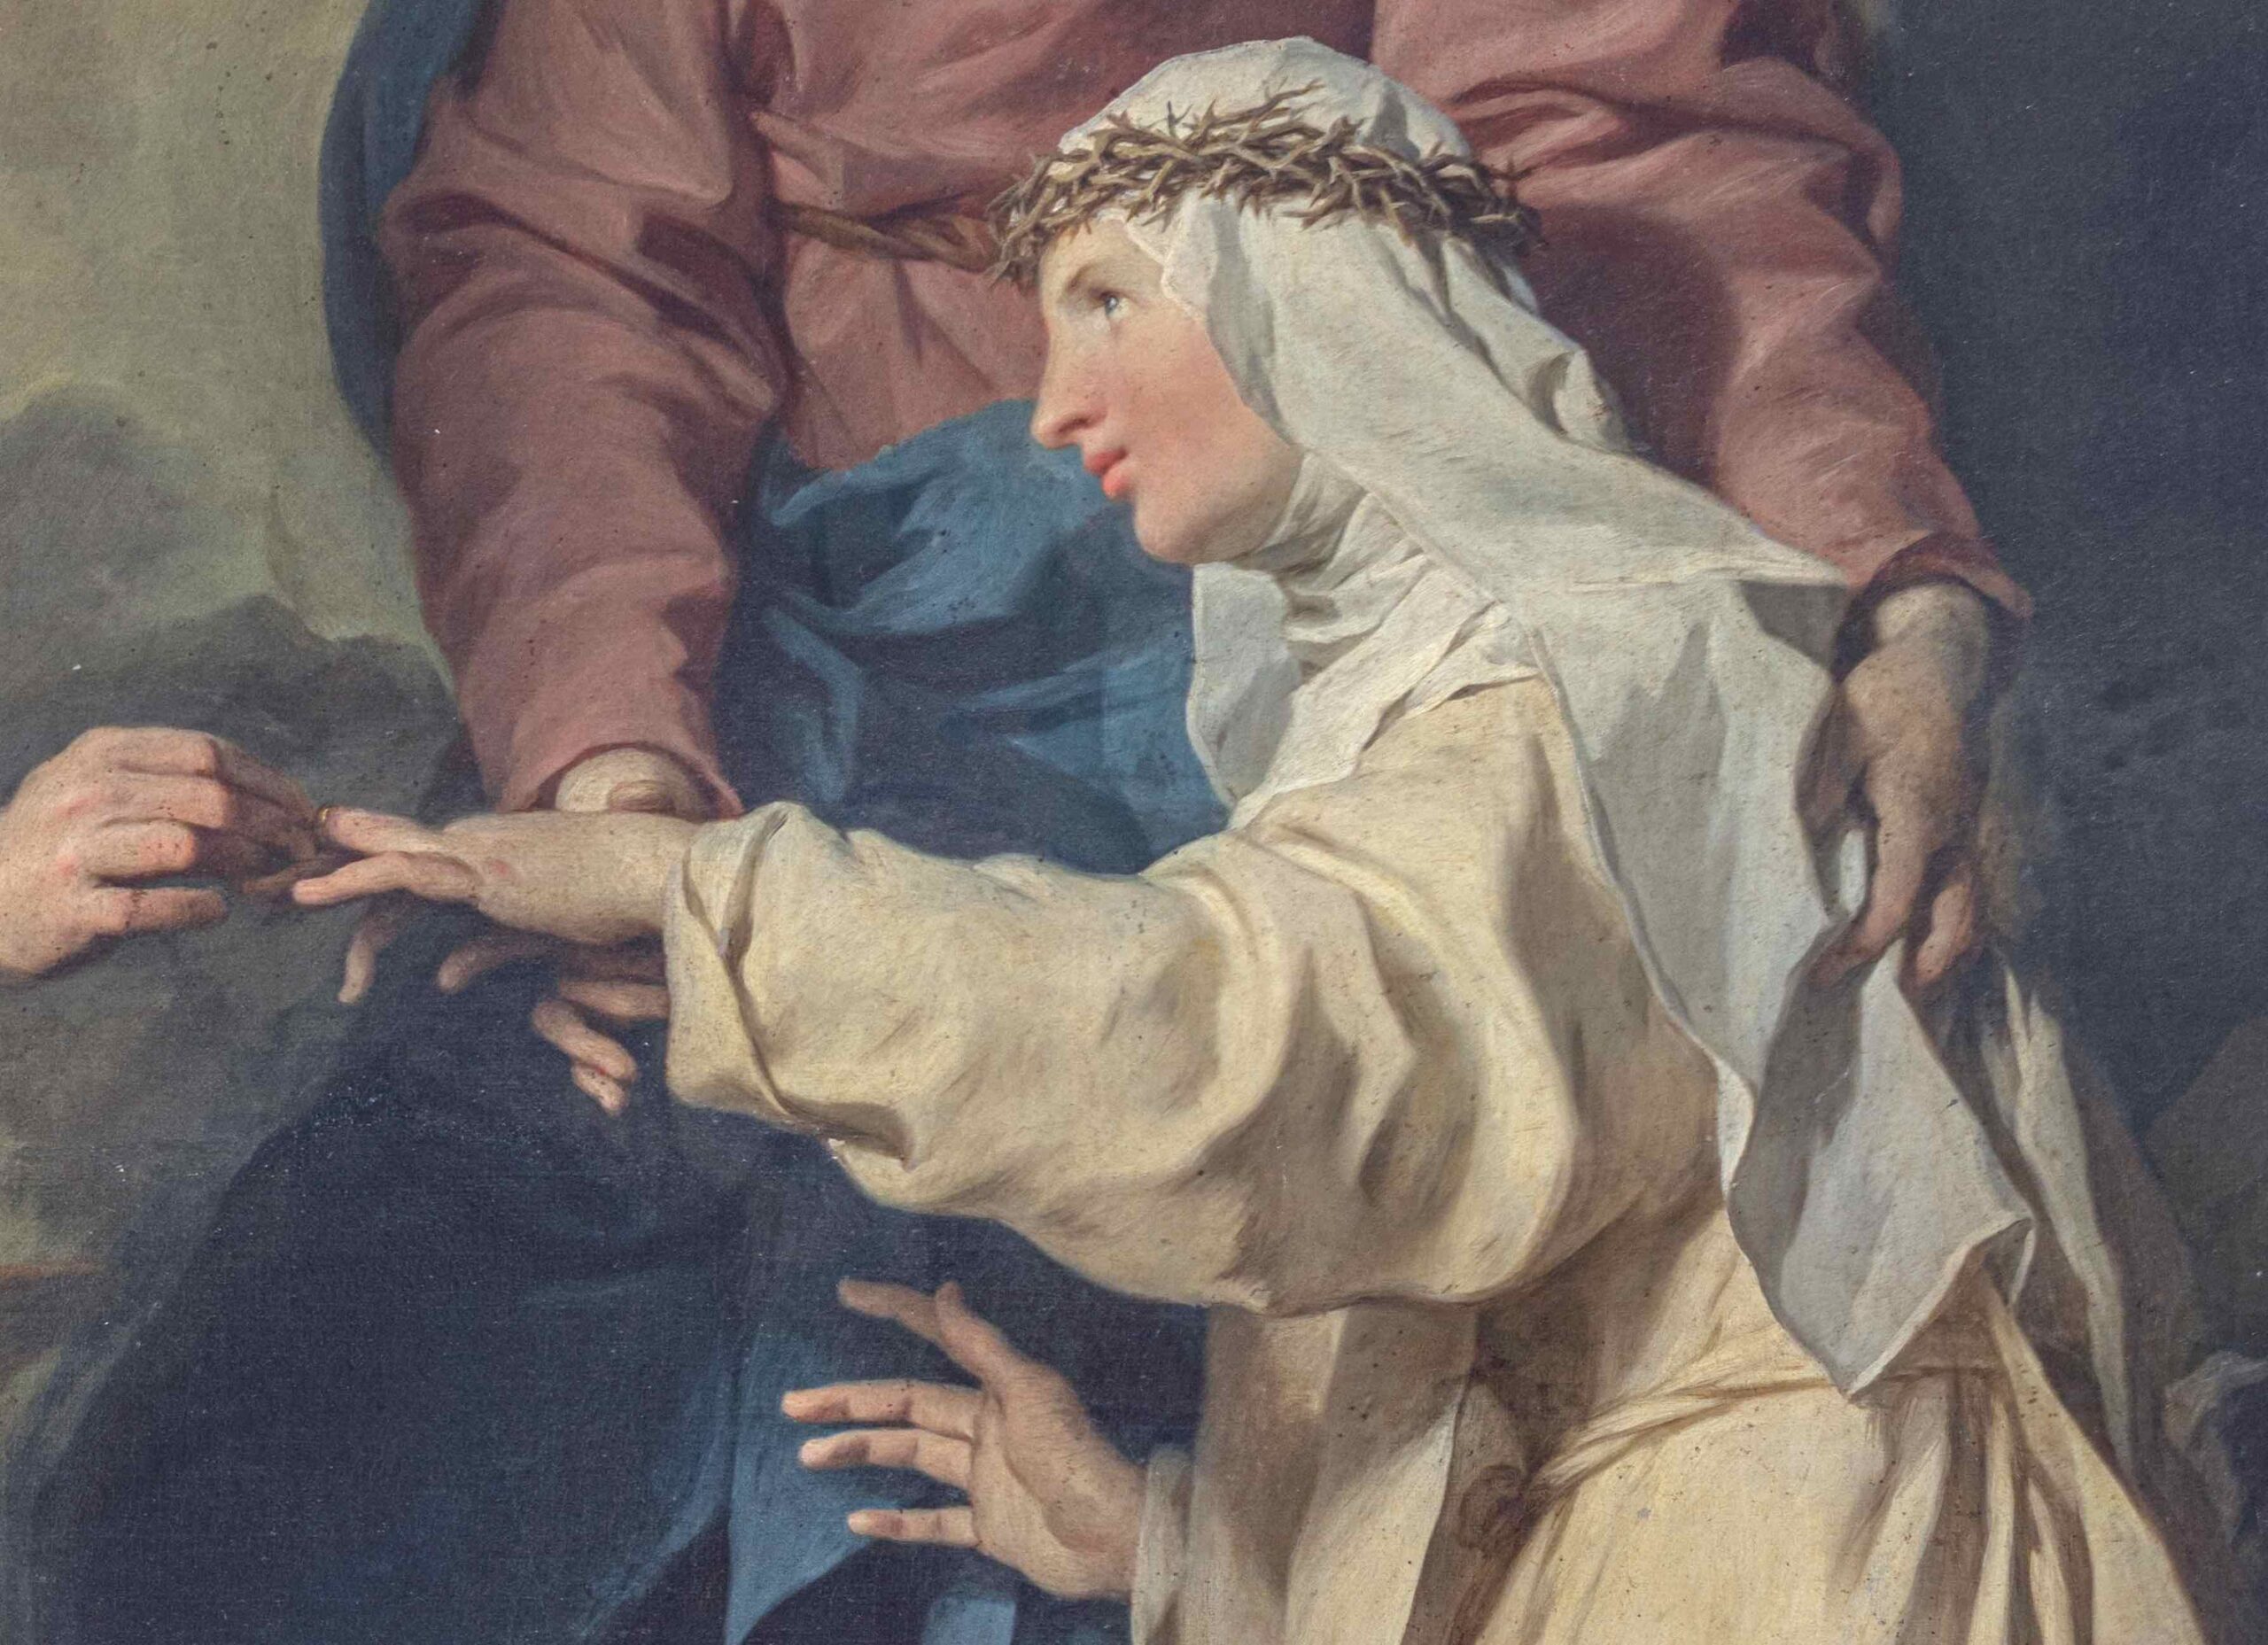 Pierre Subleyras (1699-1749), Le Mariage mystique de sainte Catherine de Ricci (1523-1590), Rome, 1745-1746. Huile sur toile, 175 x 250 cm. Signé en bas sur les marches « P. SubleyrasPinx. 1746 ». Benappi Fine Art, Londres.